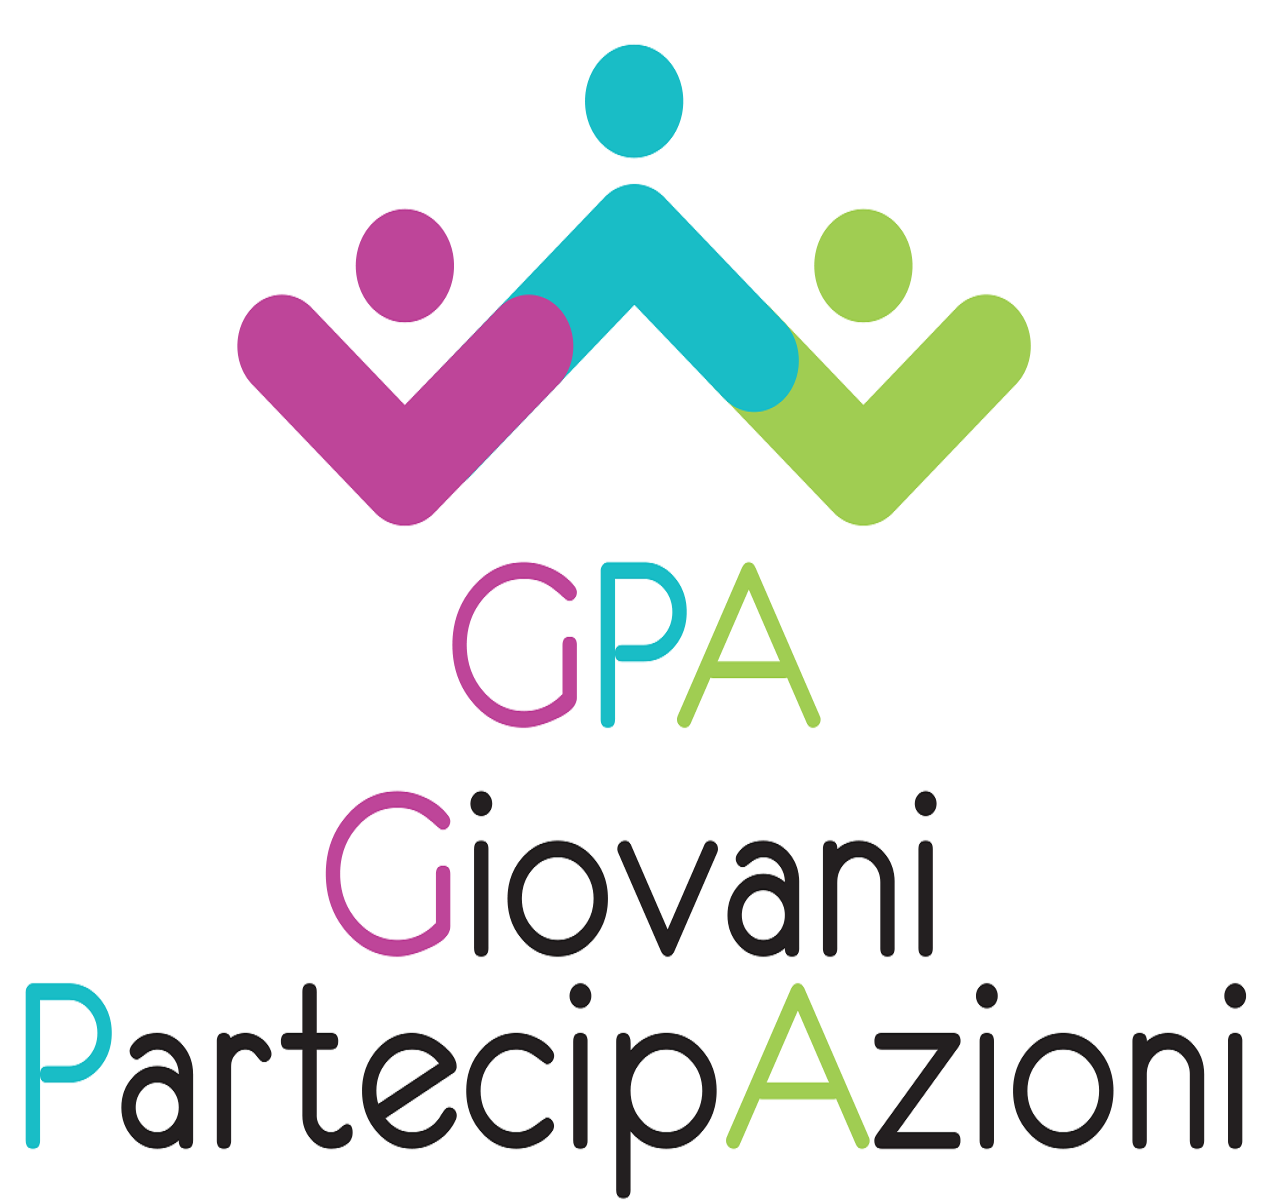 GPA - Giovani partecipazioni